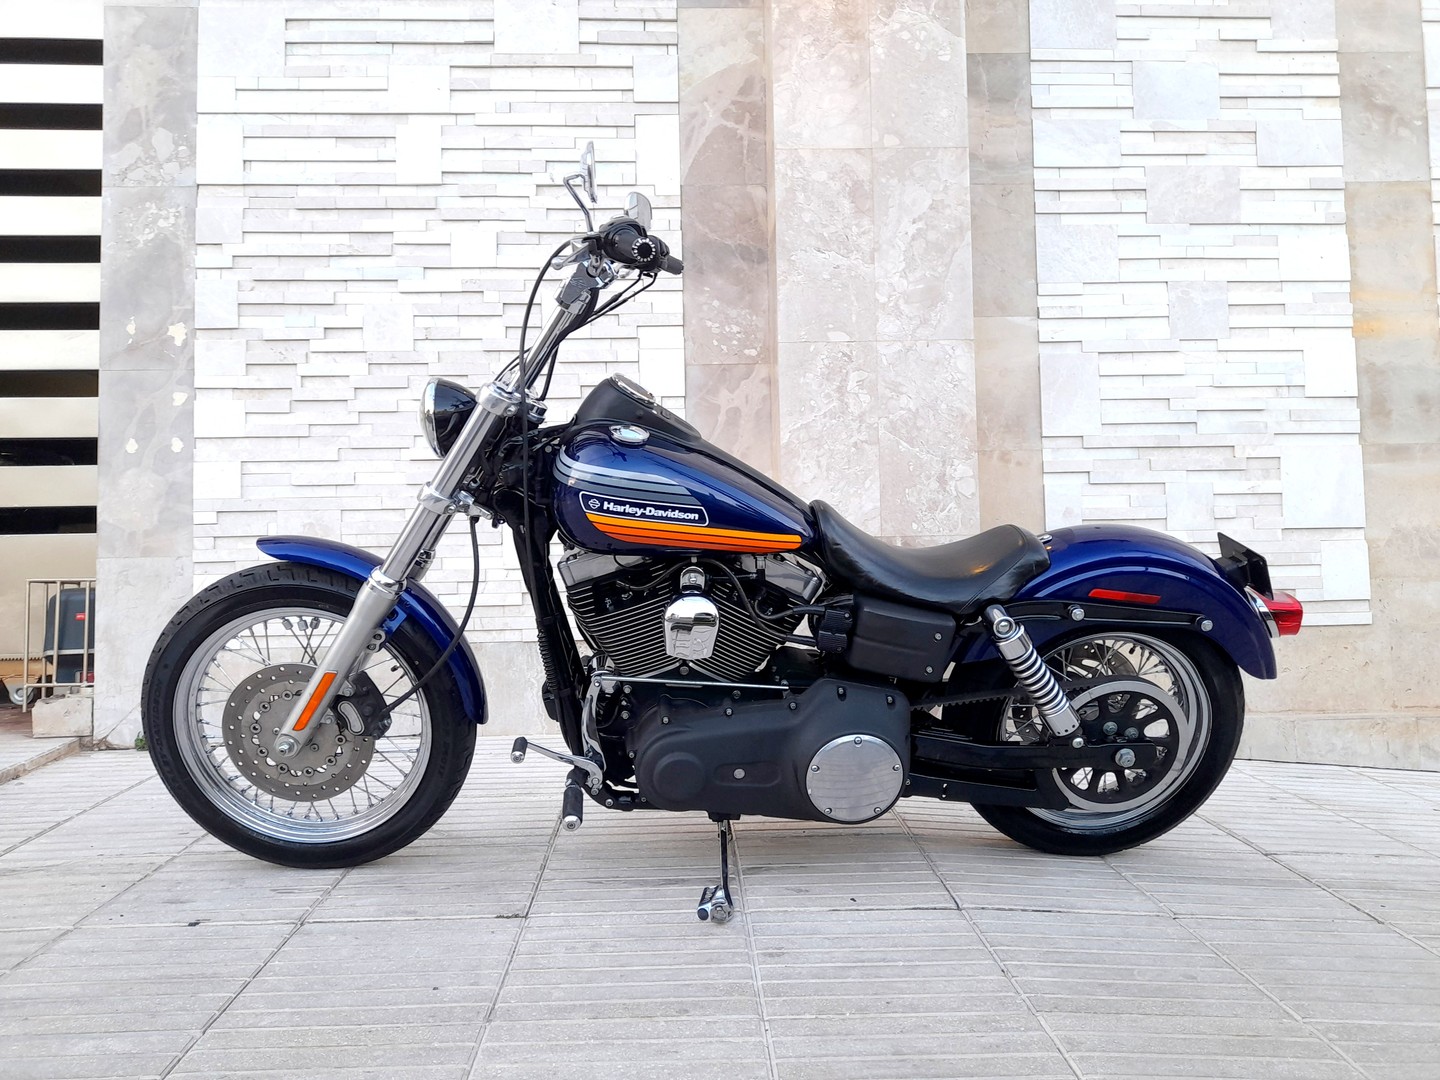 motores y pasolas - Harley Davidson StreetBob 07 1600cc 1